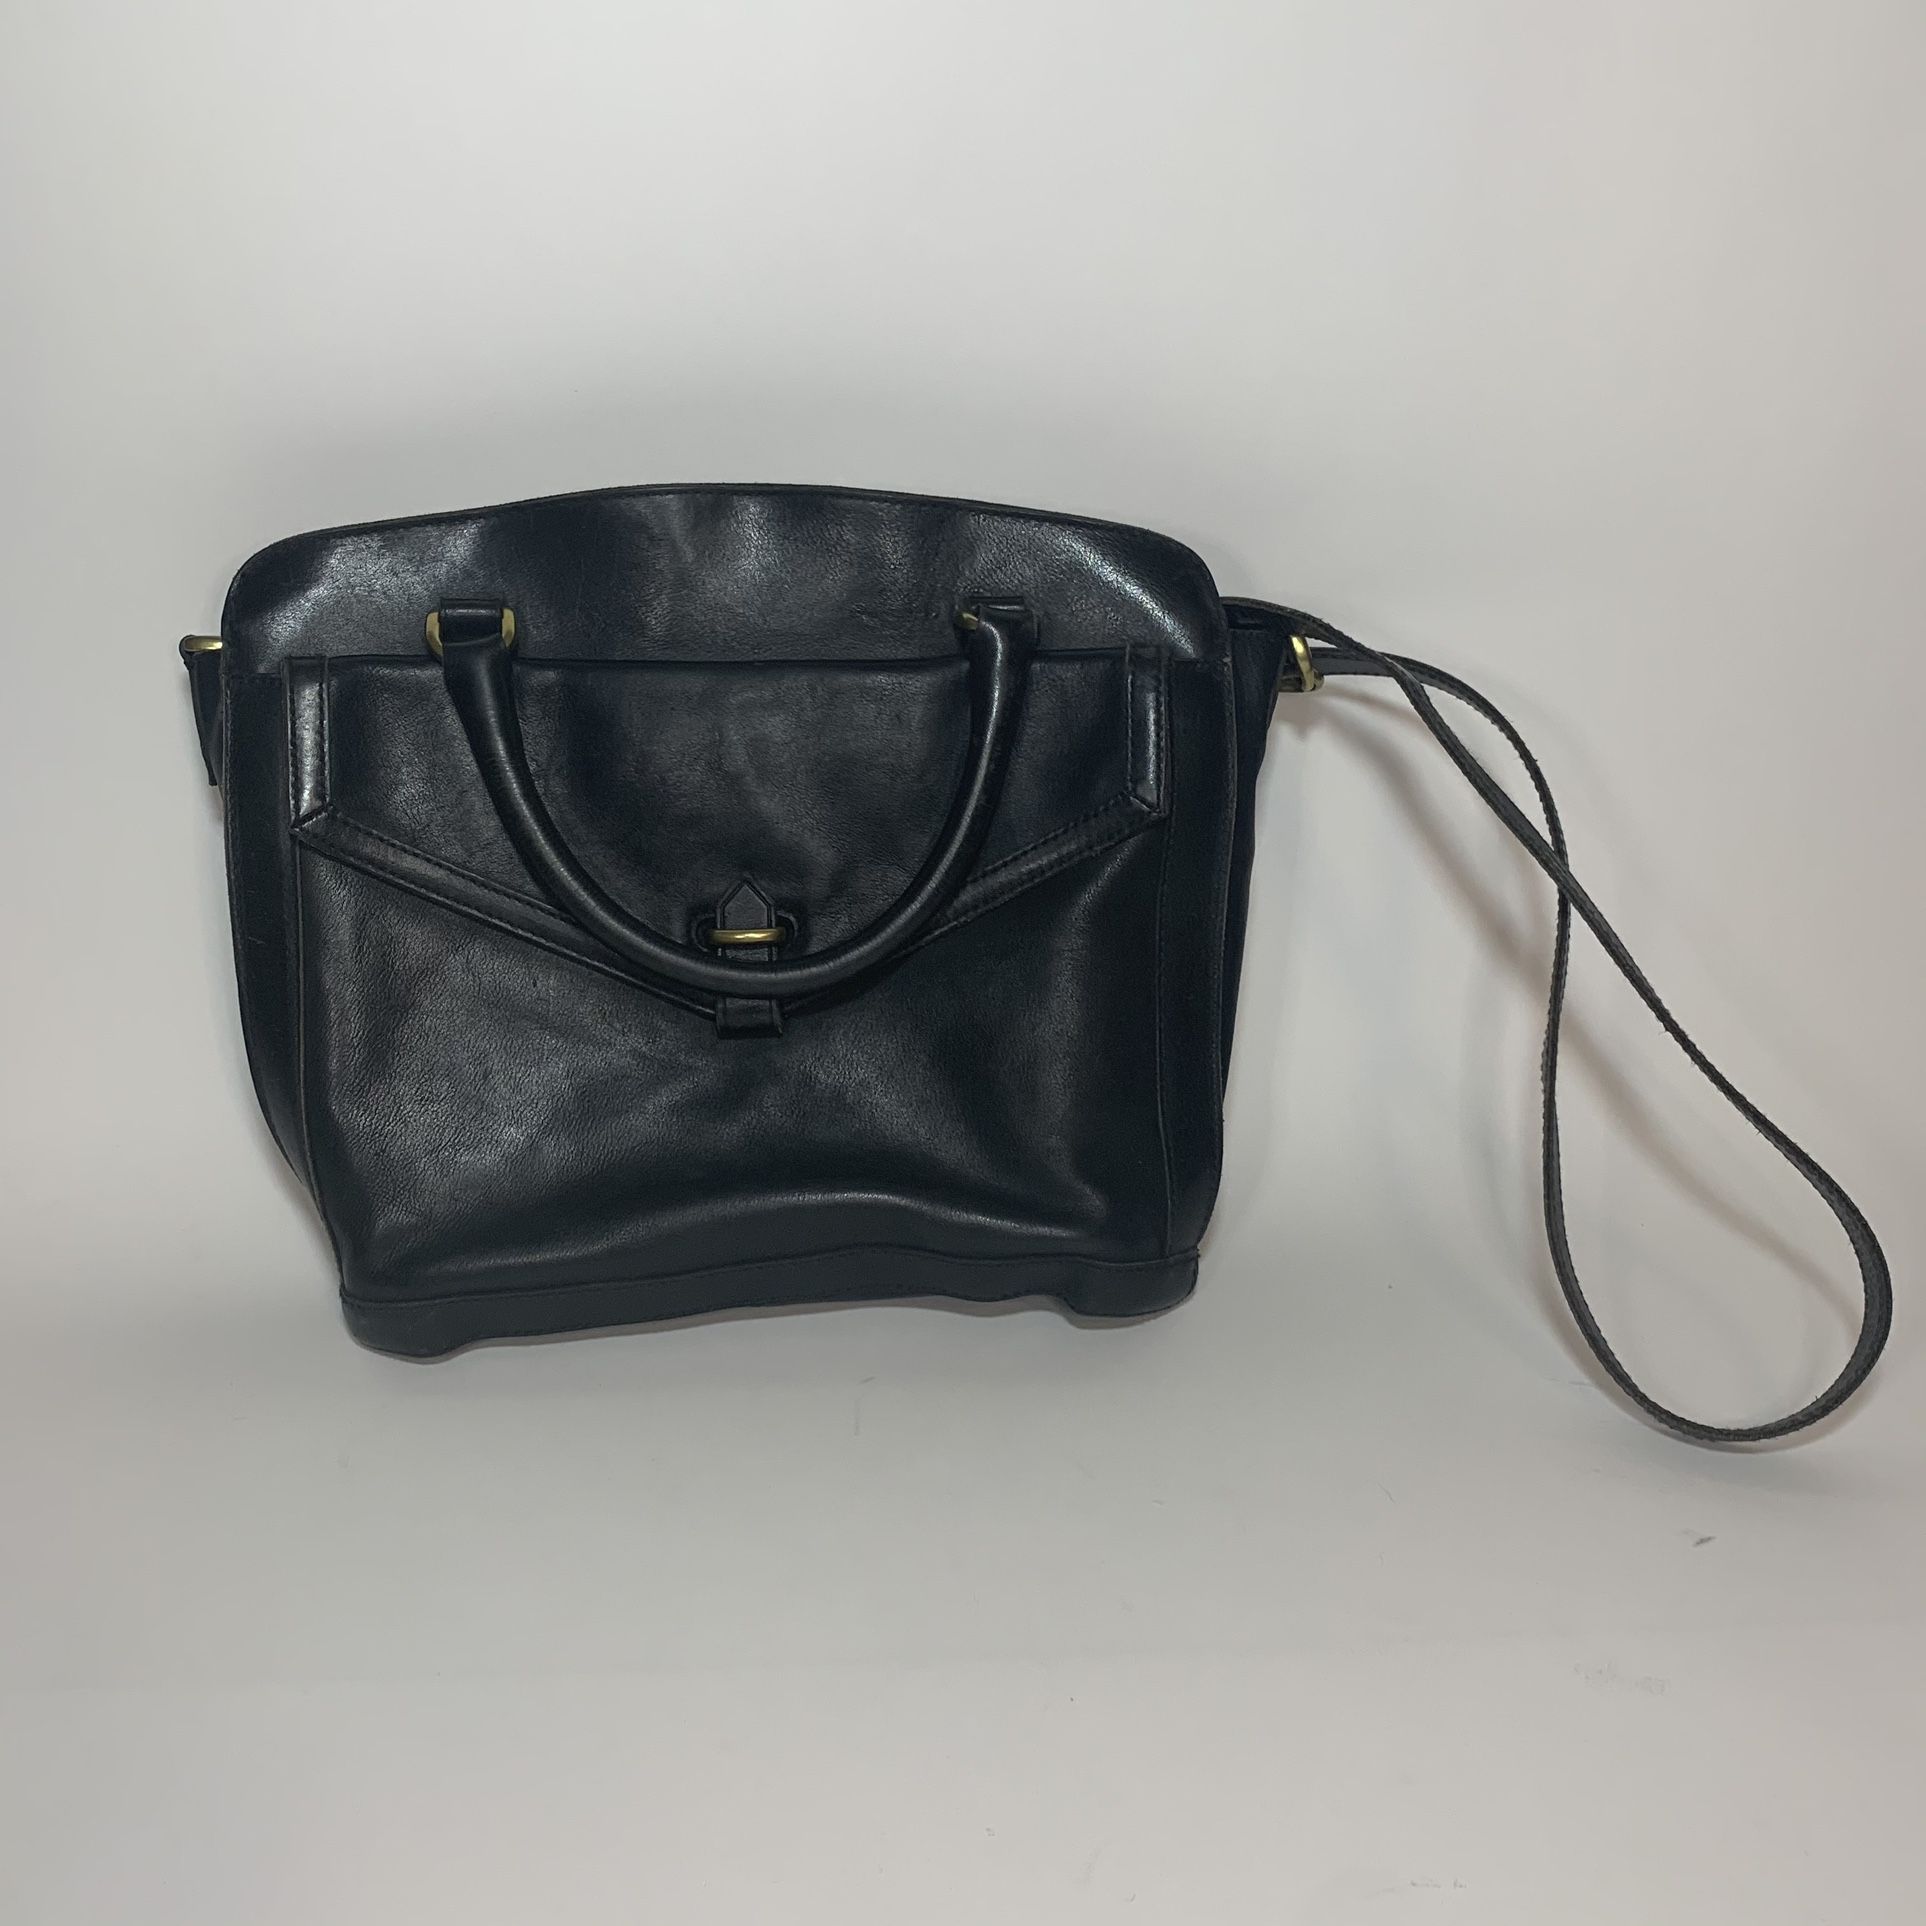 Madewell The Sloane Satchel Leather Messenger Shoulder Bag Purse Black